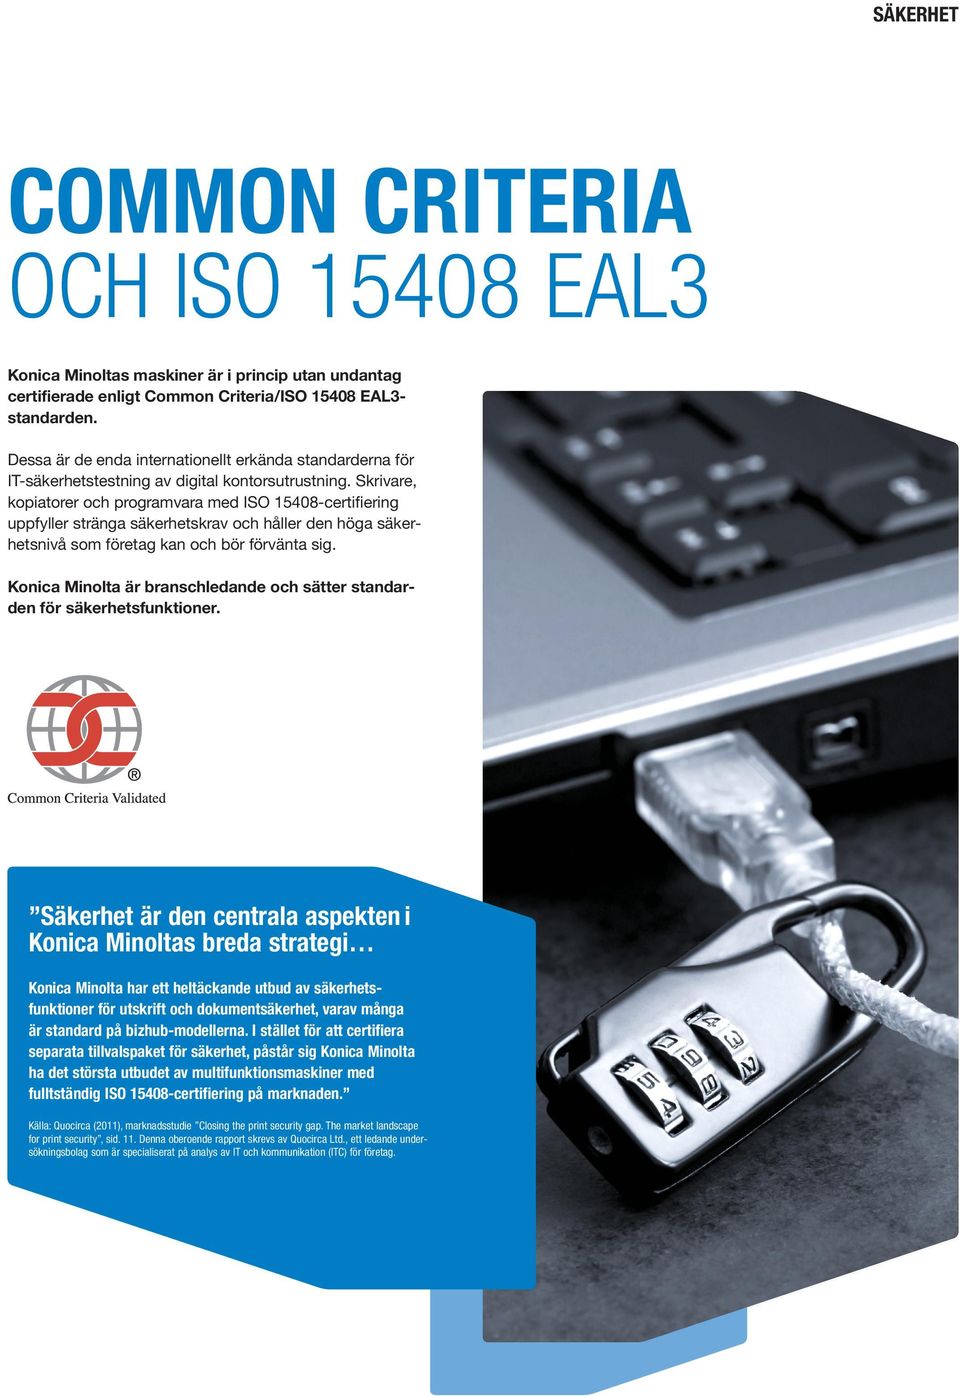 Skrivare, kopiatorer och programvara med ISO 15408-certifiering uppfyller stränga säkerhetskrav och håller den höga säkerhetsnivå som företag kan och bör förvänta sig.